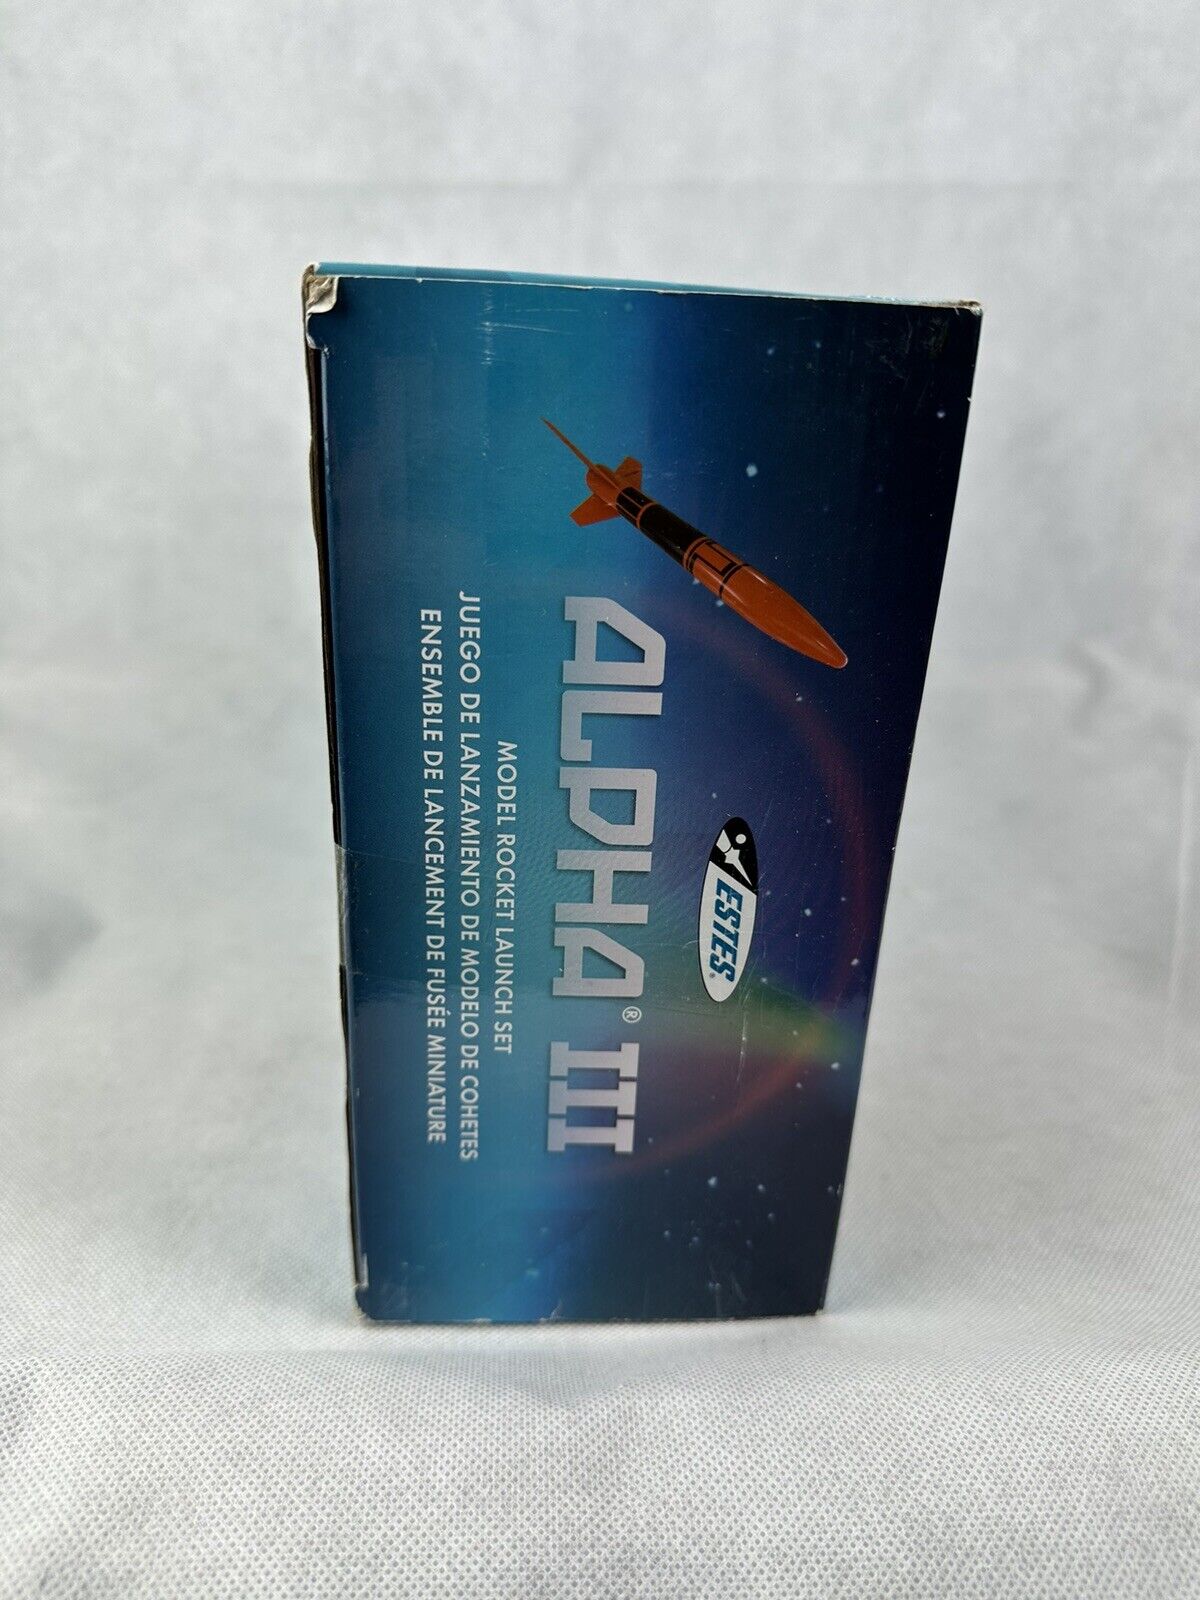 Estes Alpha III Flying Model Rocket Launch Set 1427 New Open Box Estes Rockets 451212 - фотография #5